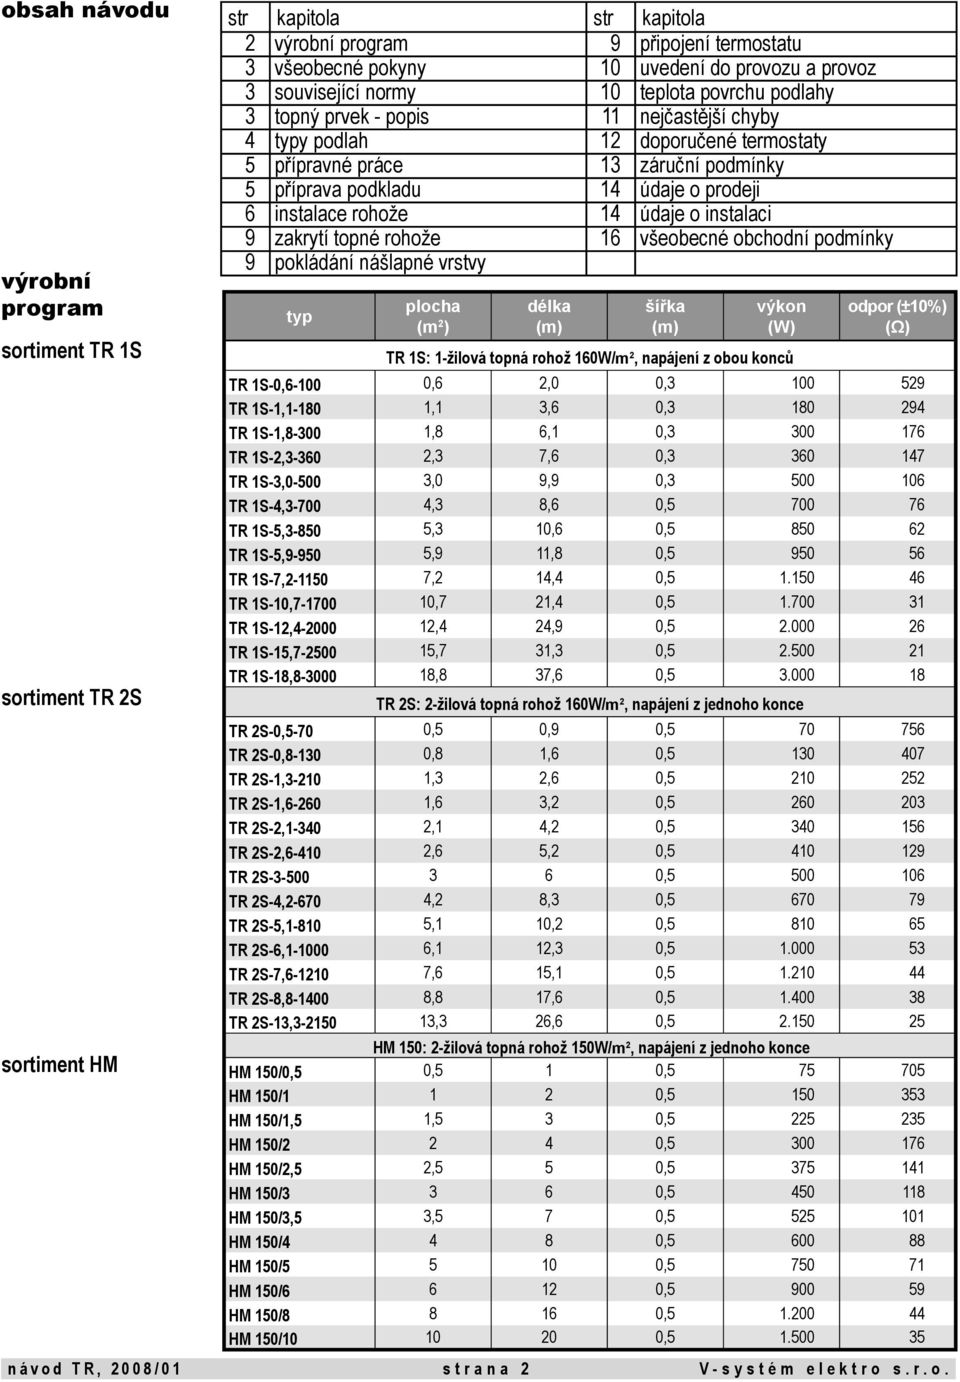 prodeji 6 instalace rohože 14 údaje o instalaci 9 zakrytí topné rohože 16 všeobecné obchodní podmínky 9 pokládání nášlapné vrstvy typ plocha (m 2 ) délka (m) šířka (m) výkon (W) TR 1S: 1-žilová topná